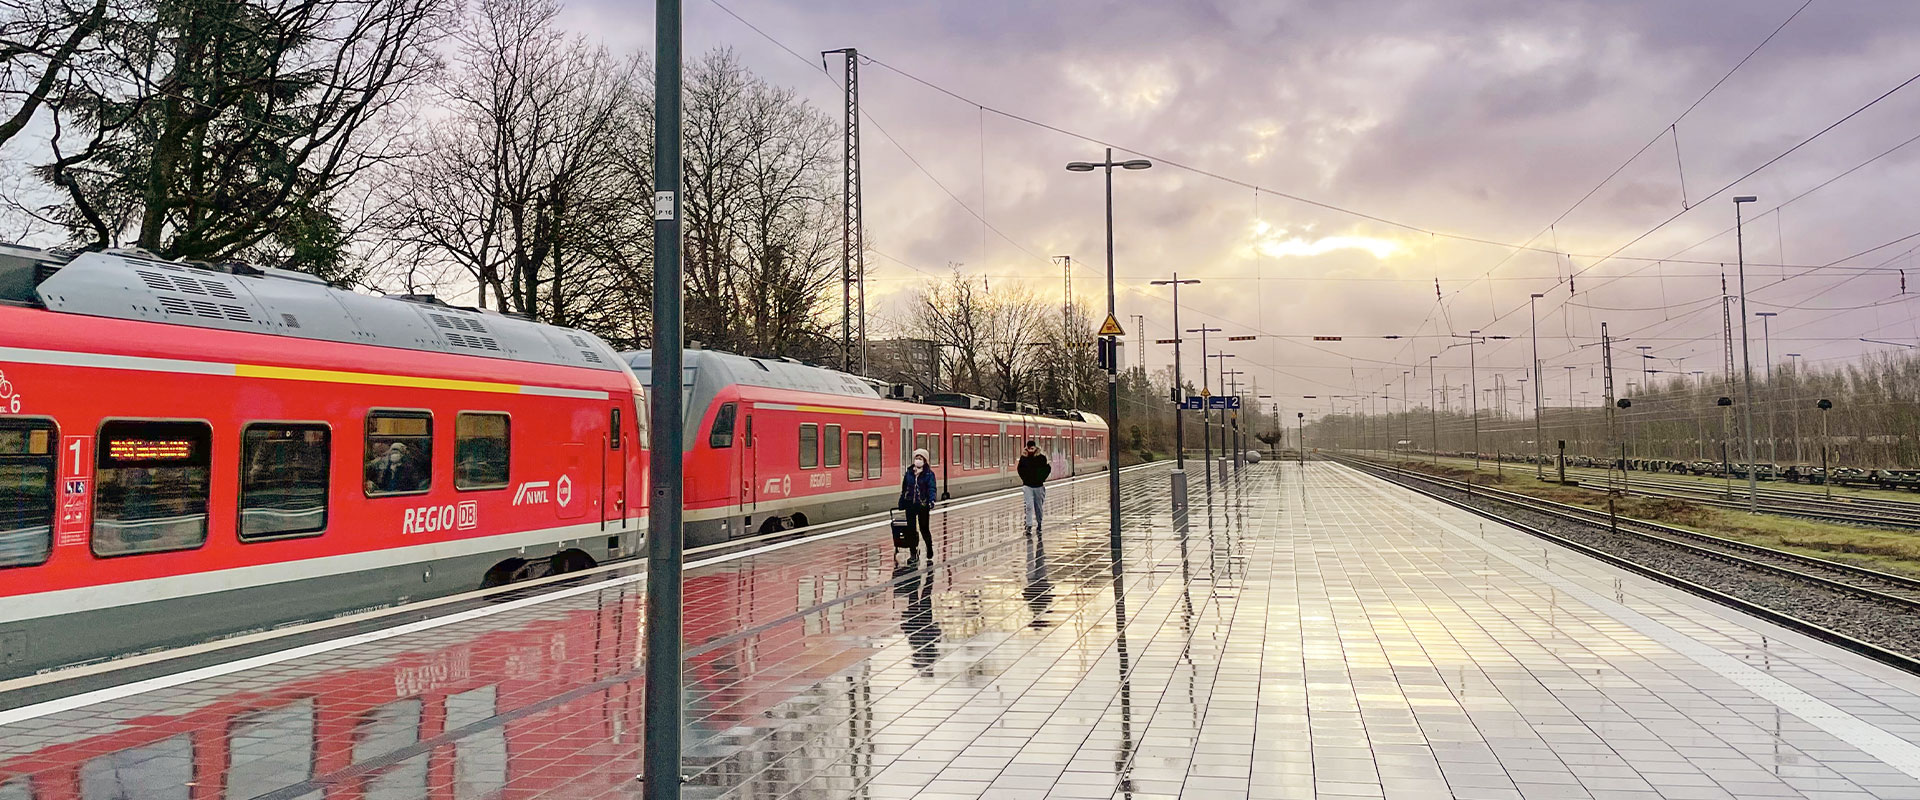 Ein regennasser Bahnsteig, an dem ein roter Regionalzug von DB Regio hält